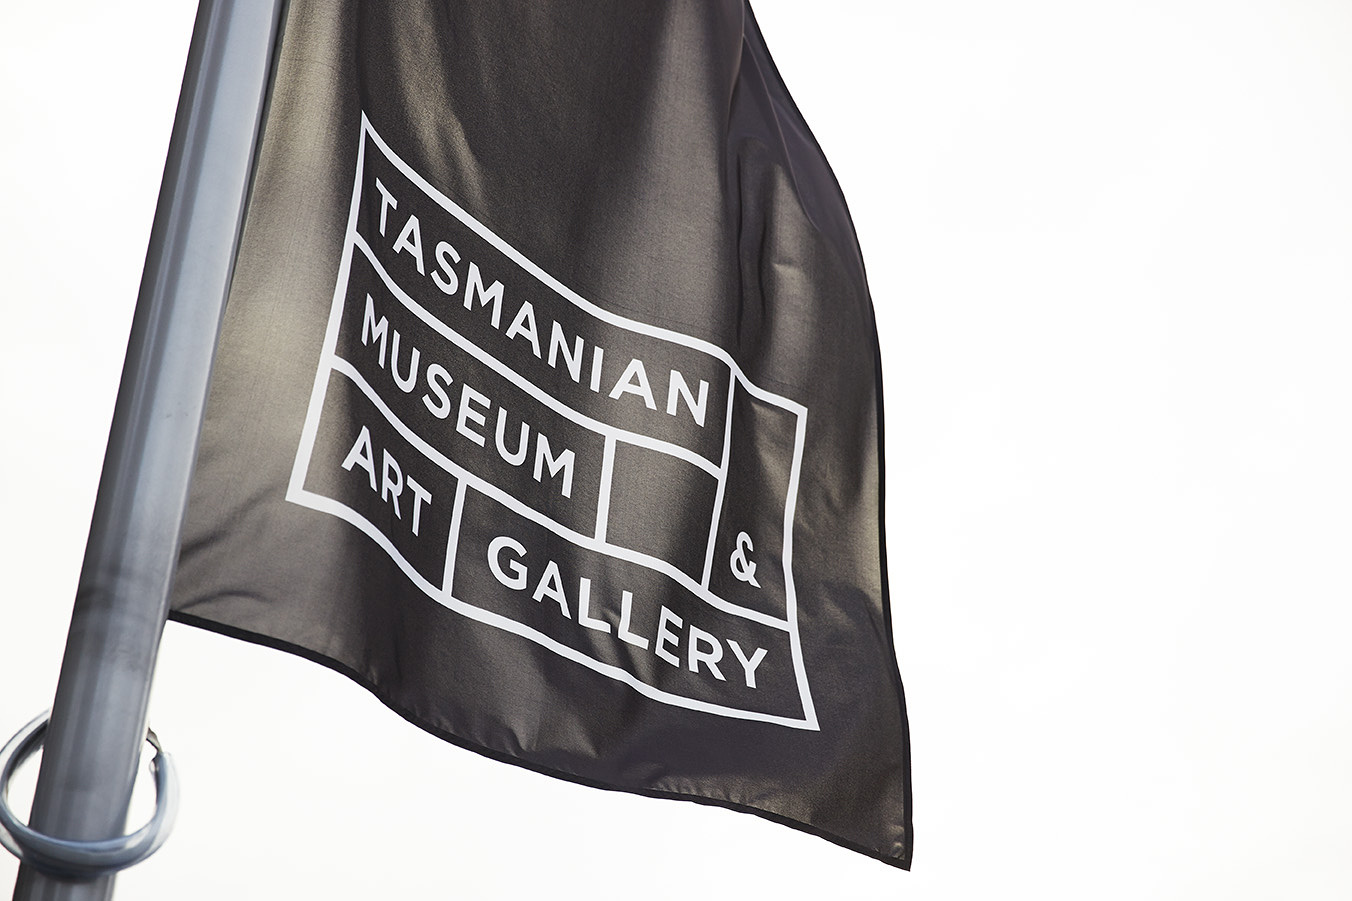 塔斯马尼亚博物馆和美术馆导视系统设计©garrettdonnelly